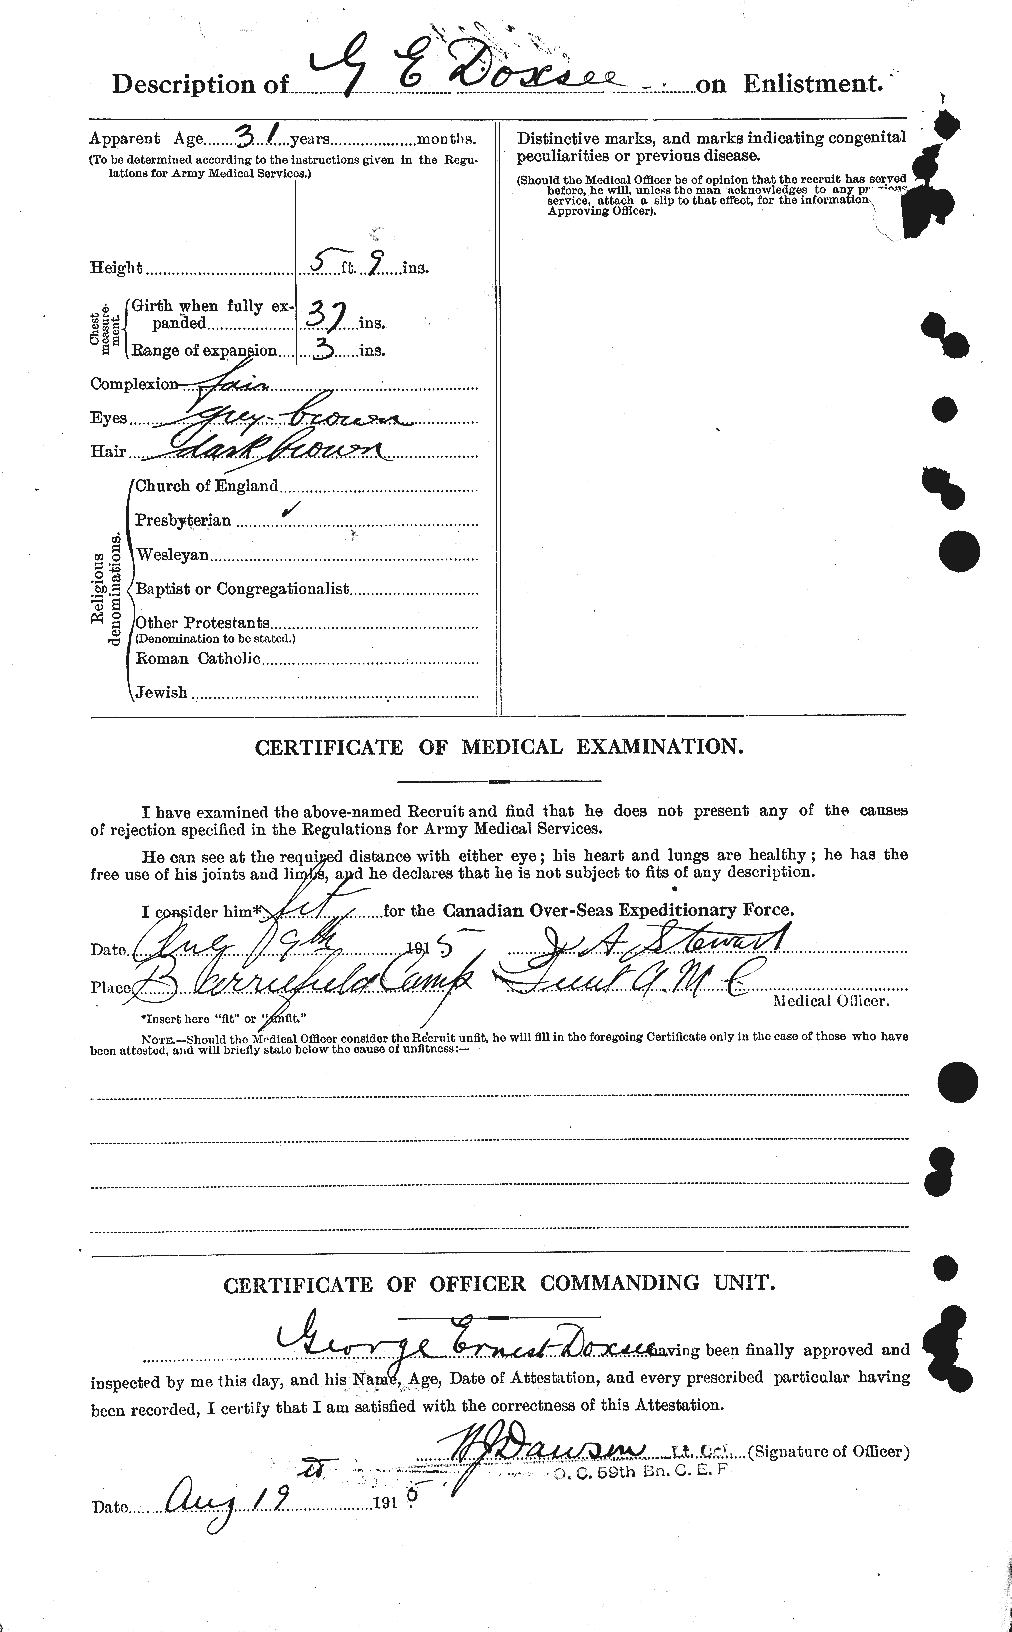 Dossiers du Personnel de la Première Guerre mondiale - CEC 298371b